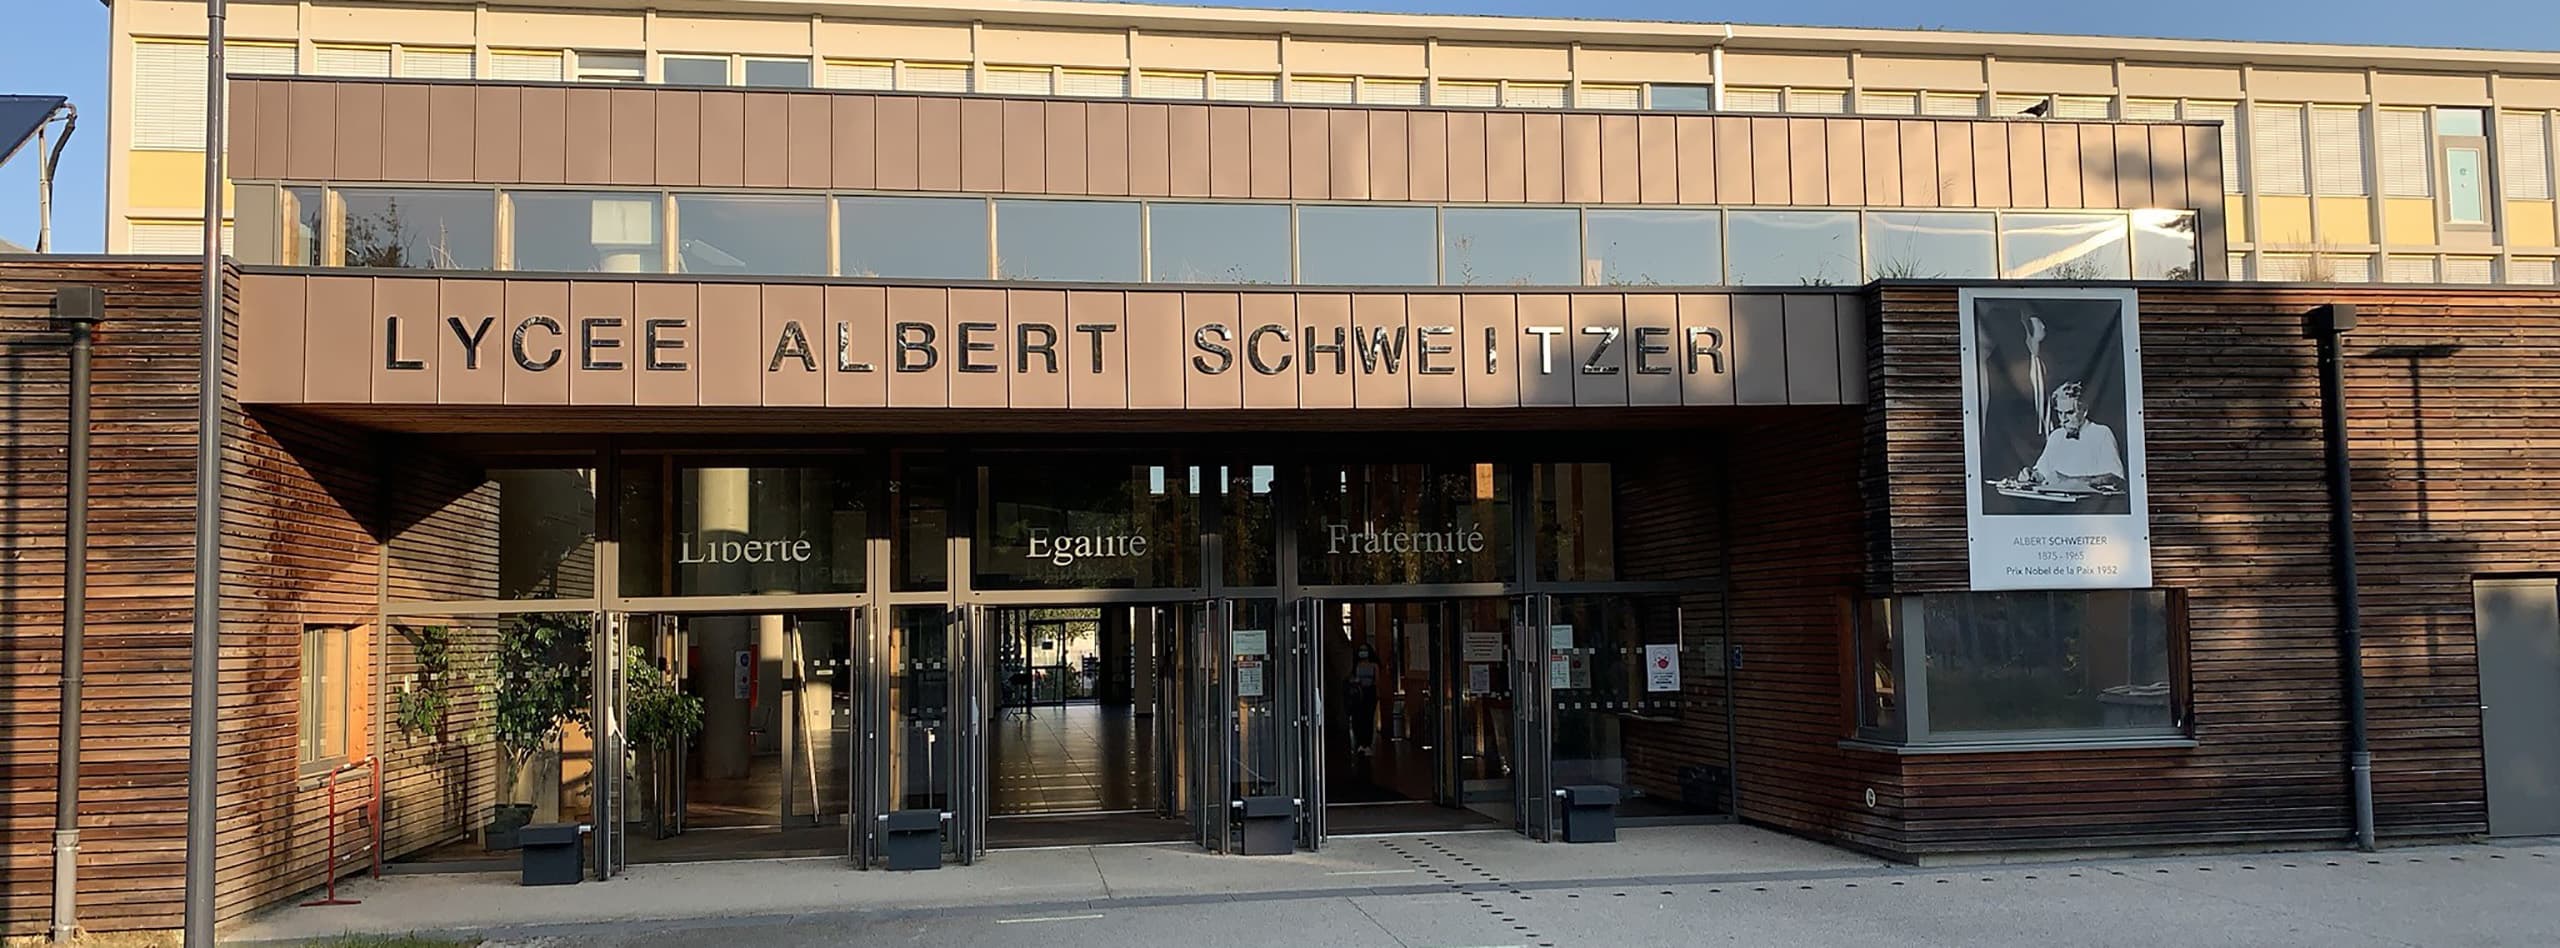 Lycée Albert Schweitzer – Mulhouse